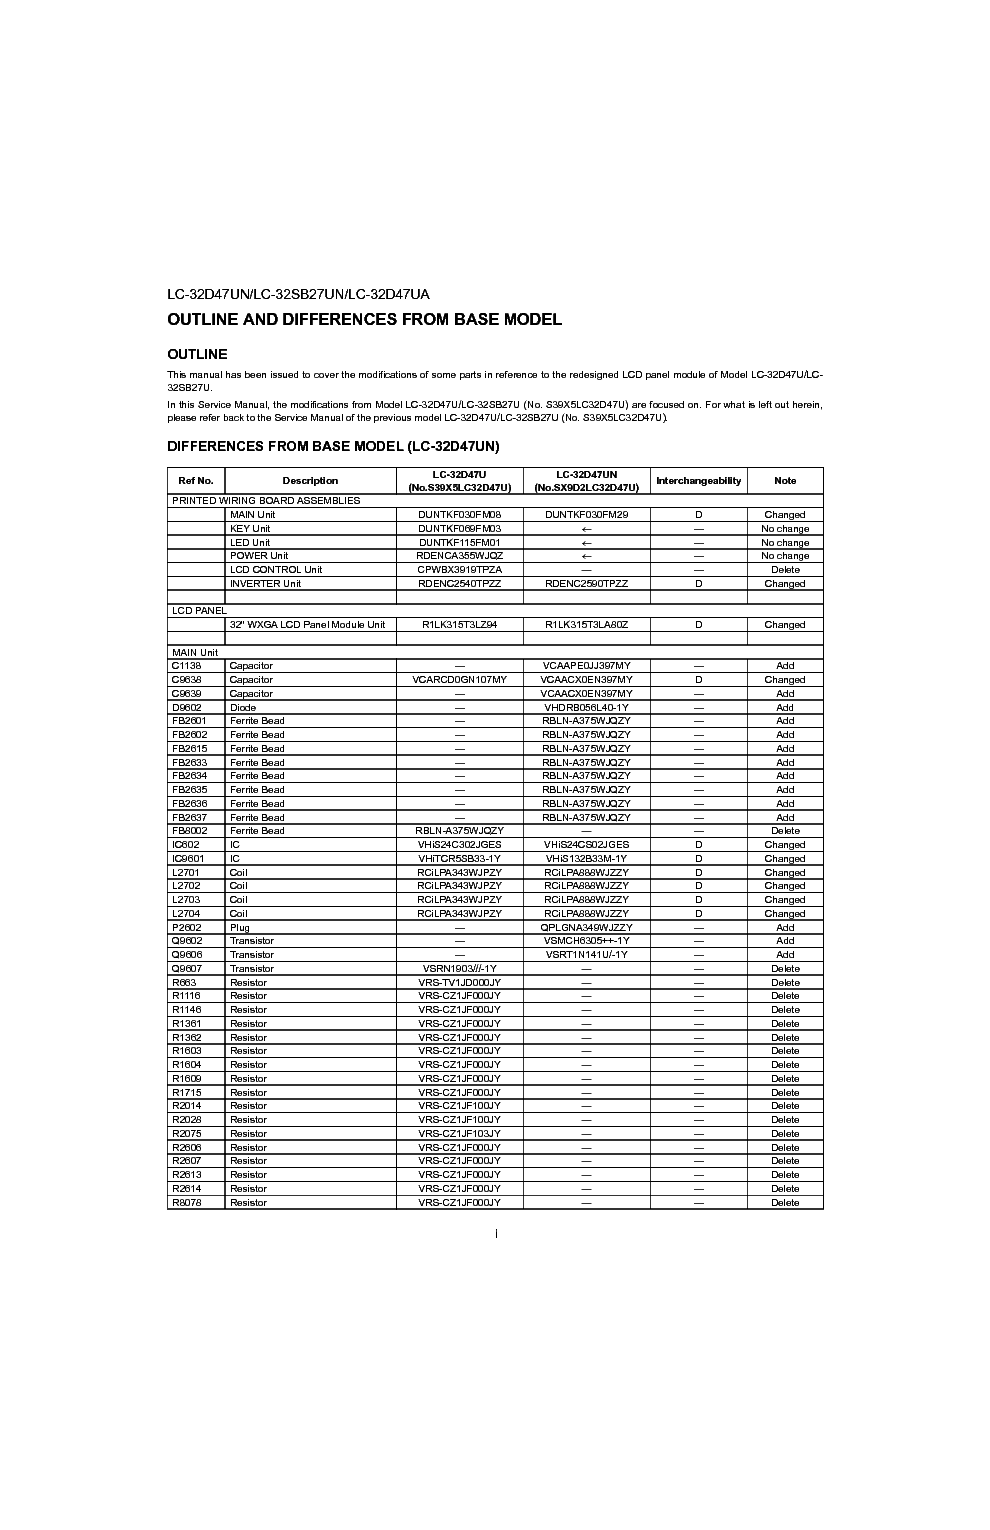 SHARP LC-32D47UN LC-32SB27UN LC-32D47UA service manual (2nd page)